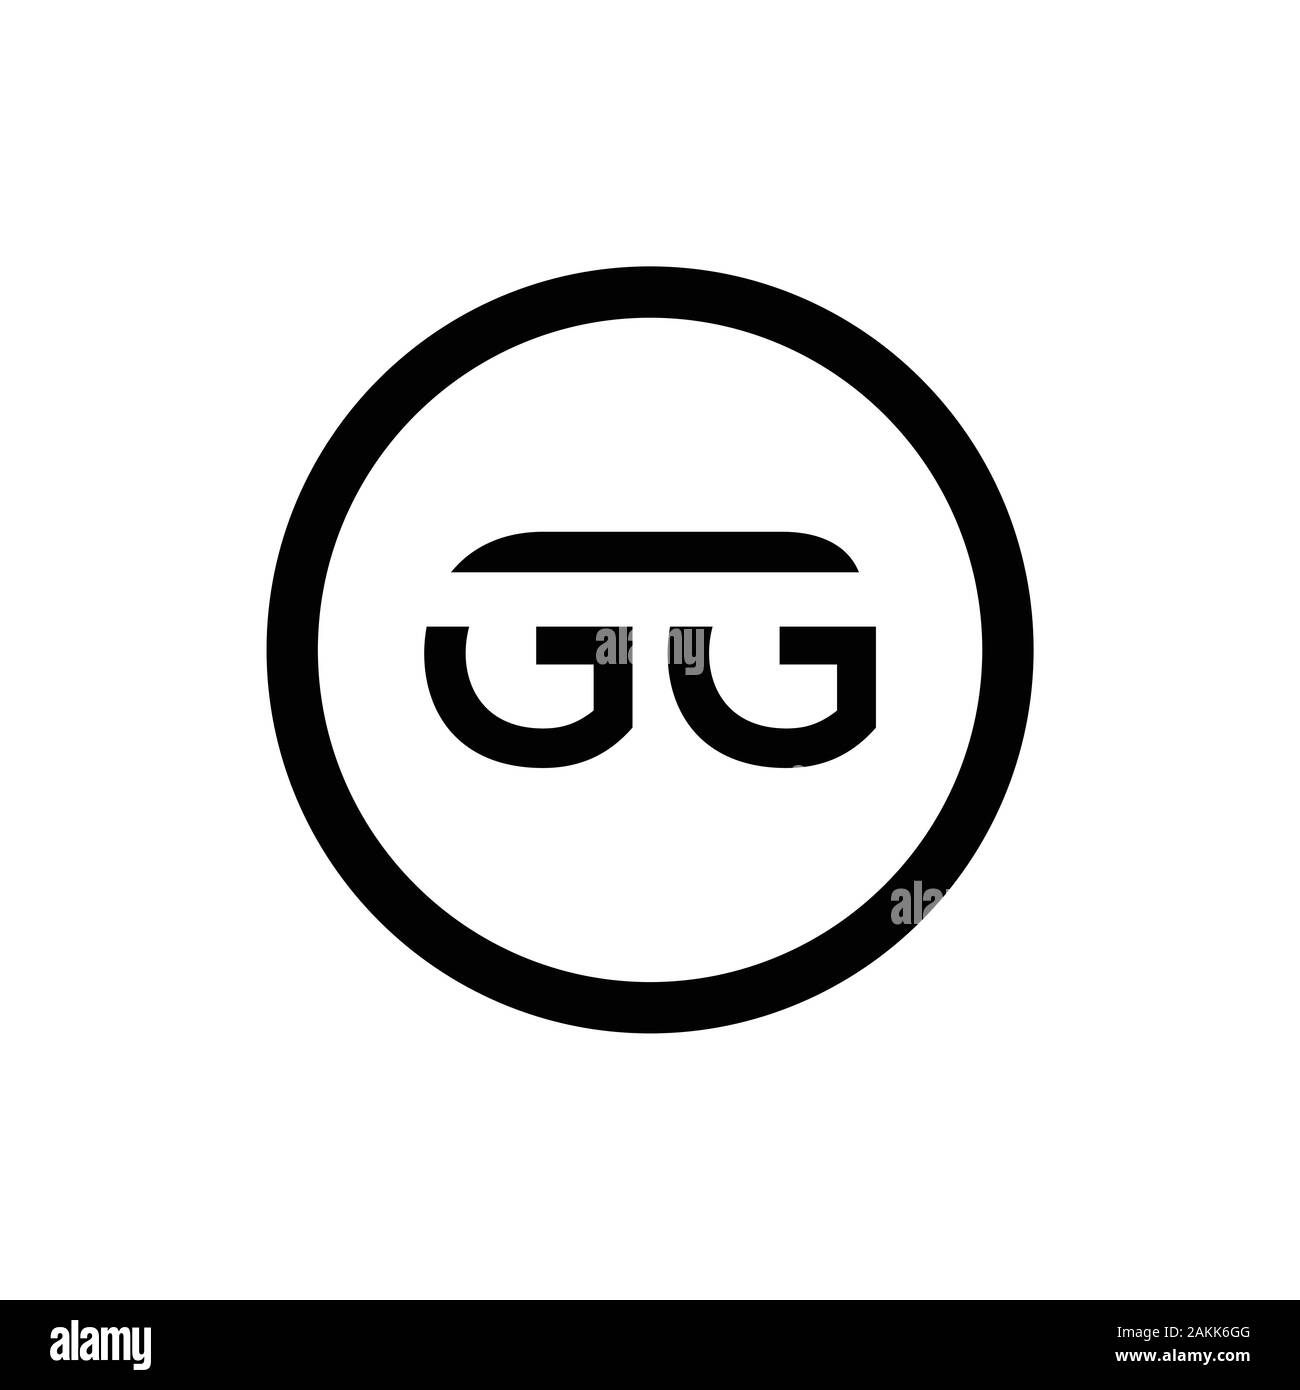 Lettre initiale GG Logo mixte. GG lettre Type Modèle de vecteur de conception de logo. Résumé Lettre GG Logo Design Illustration de Vecteur